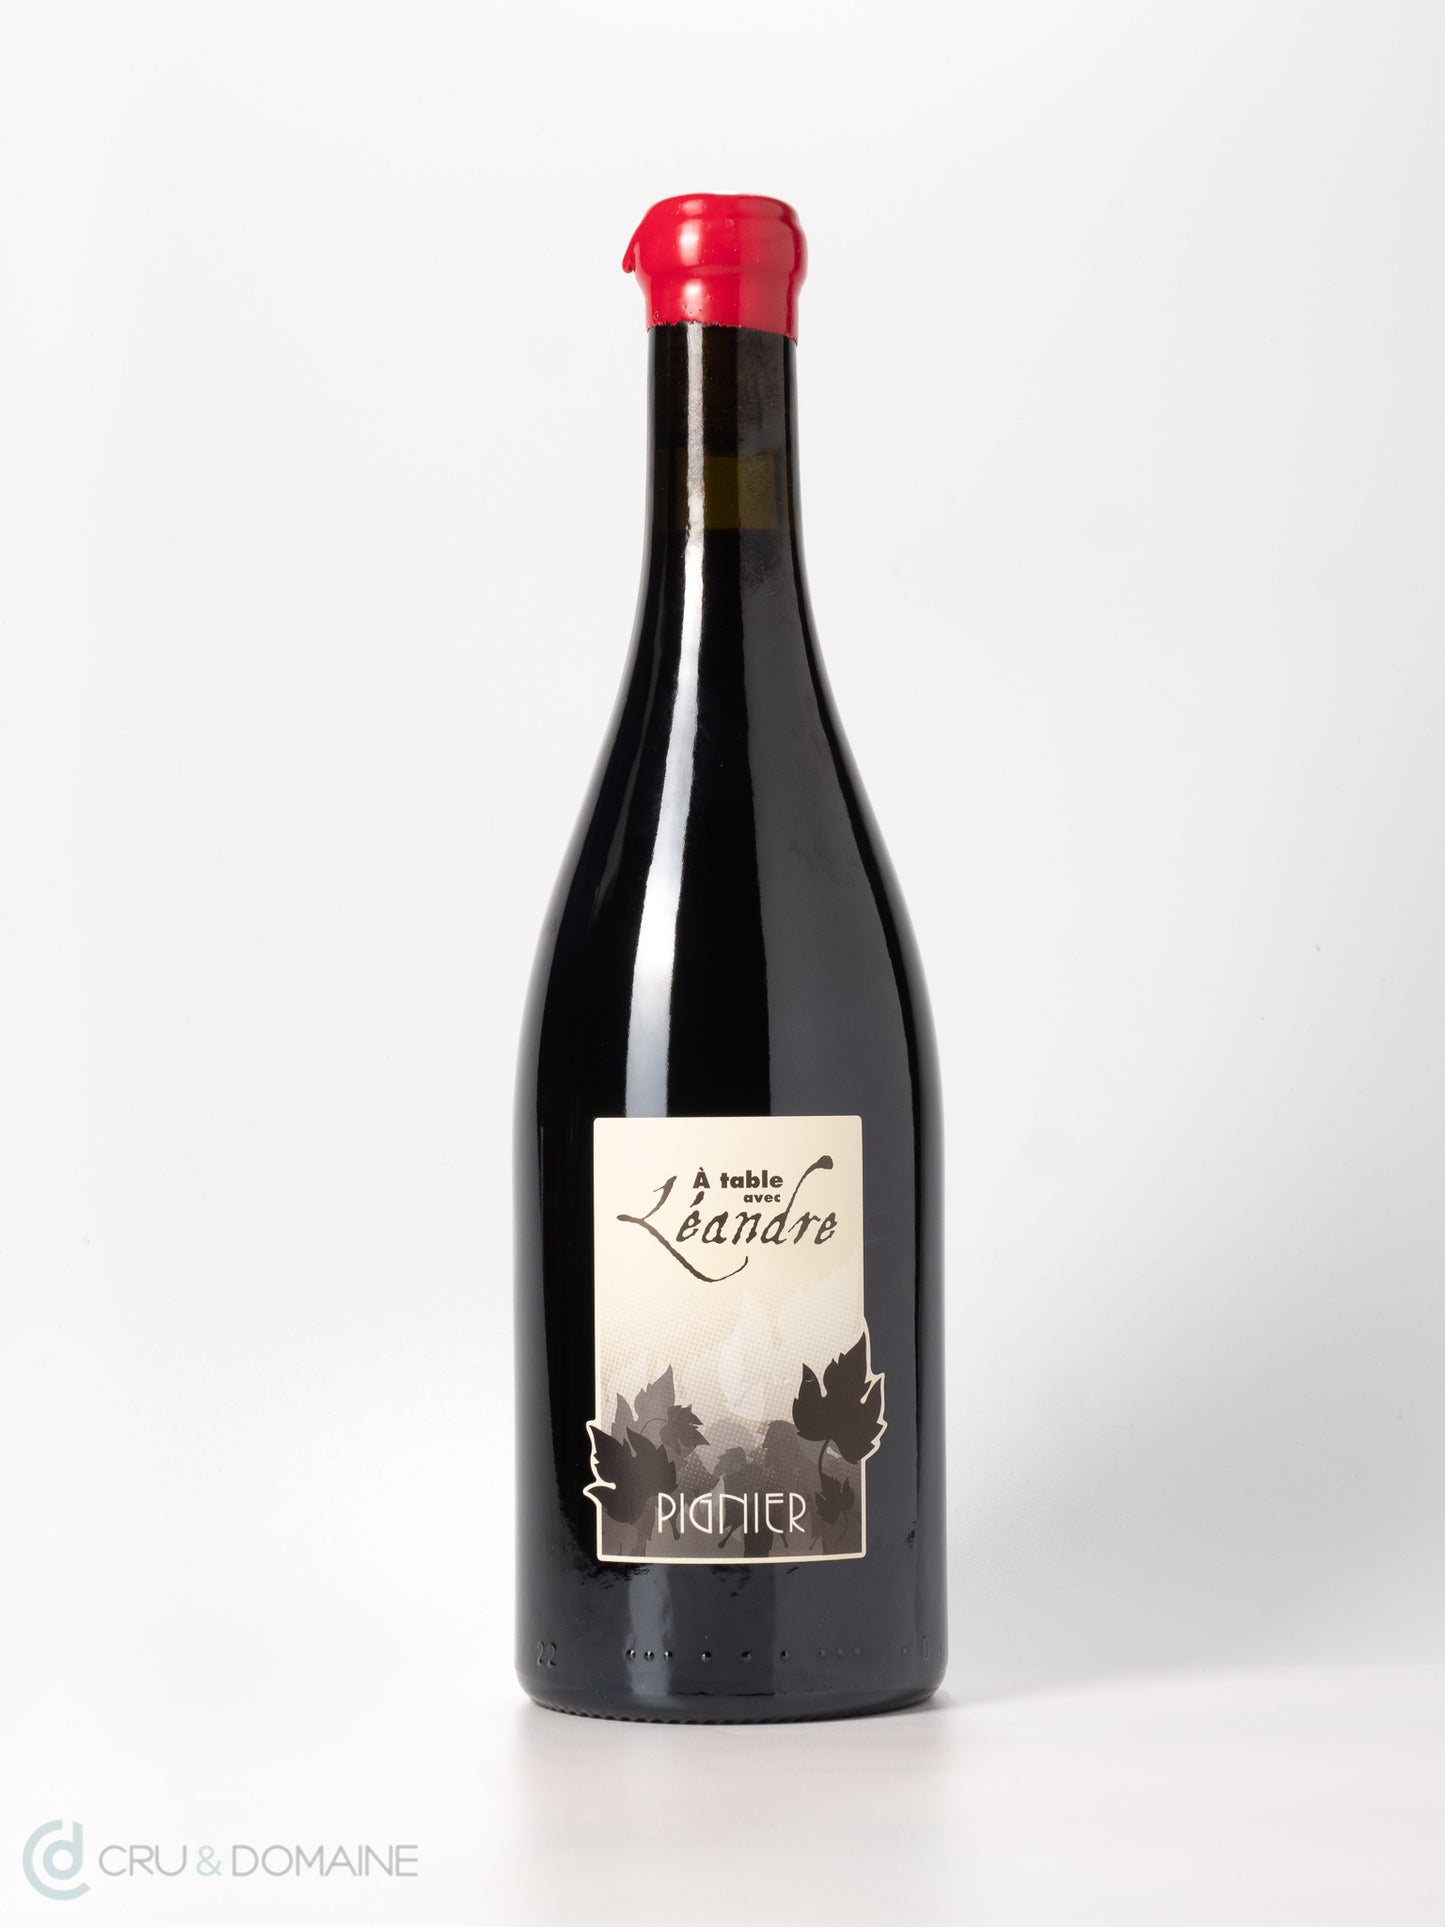 2018 Domaine Pignier, 'A Table avec Leandre', Jura blend, Vin de France